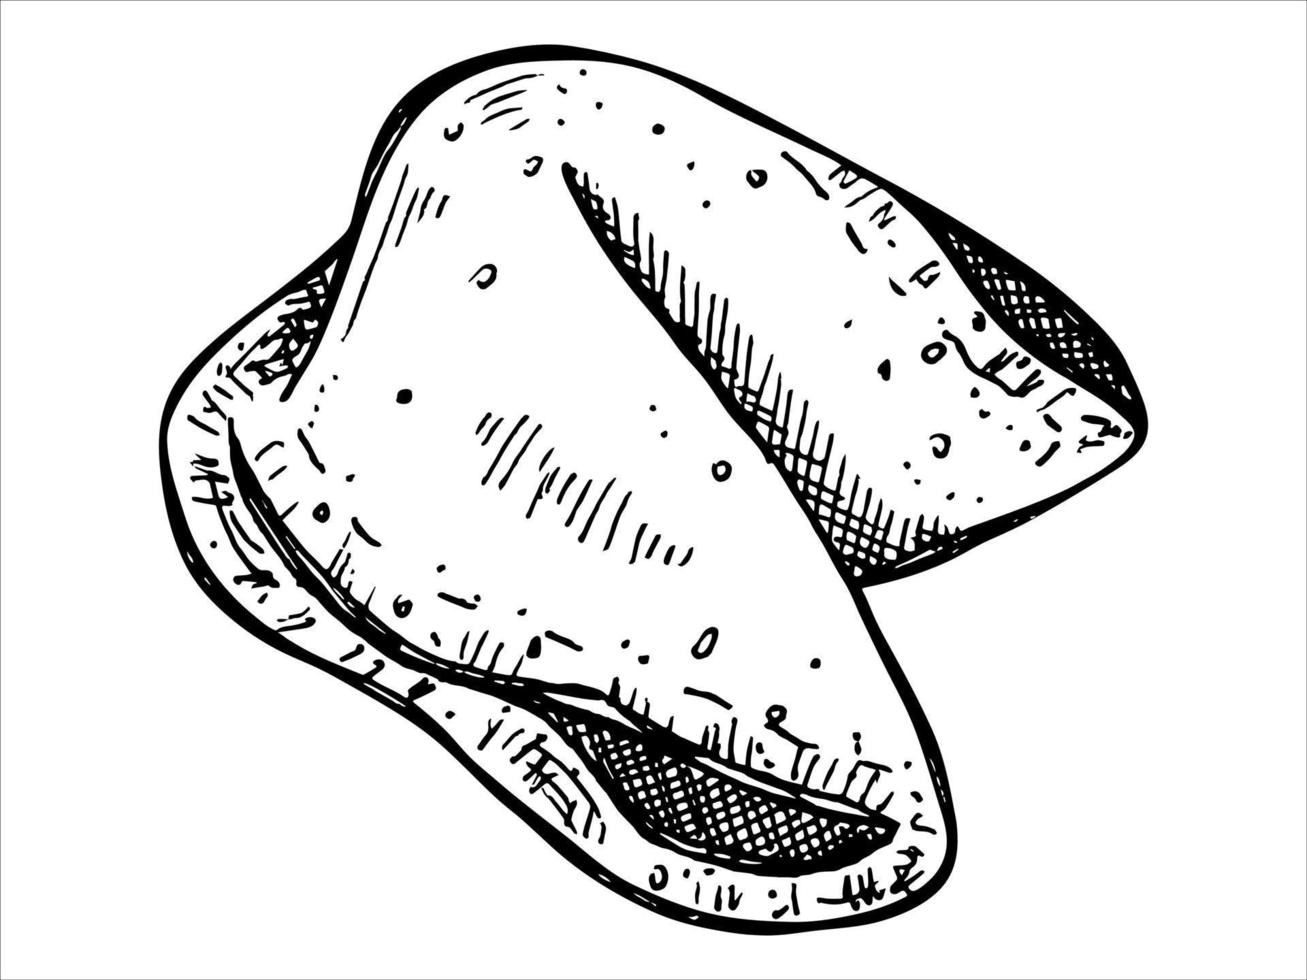 biscotto della fortuna cinese disegnato a mano di vettore isolato su sfondi bianchi. illustrazione del cibo. biscotto croccante con un pezzo di carta bianco all'interno. per stampa, web, design, arredamento, logo.